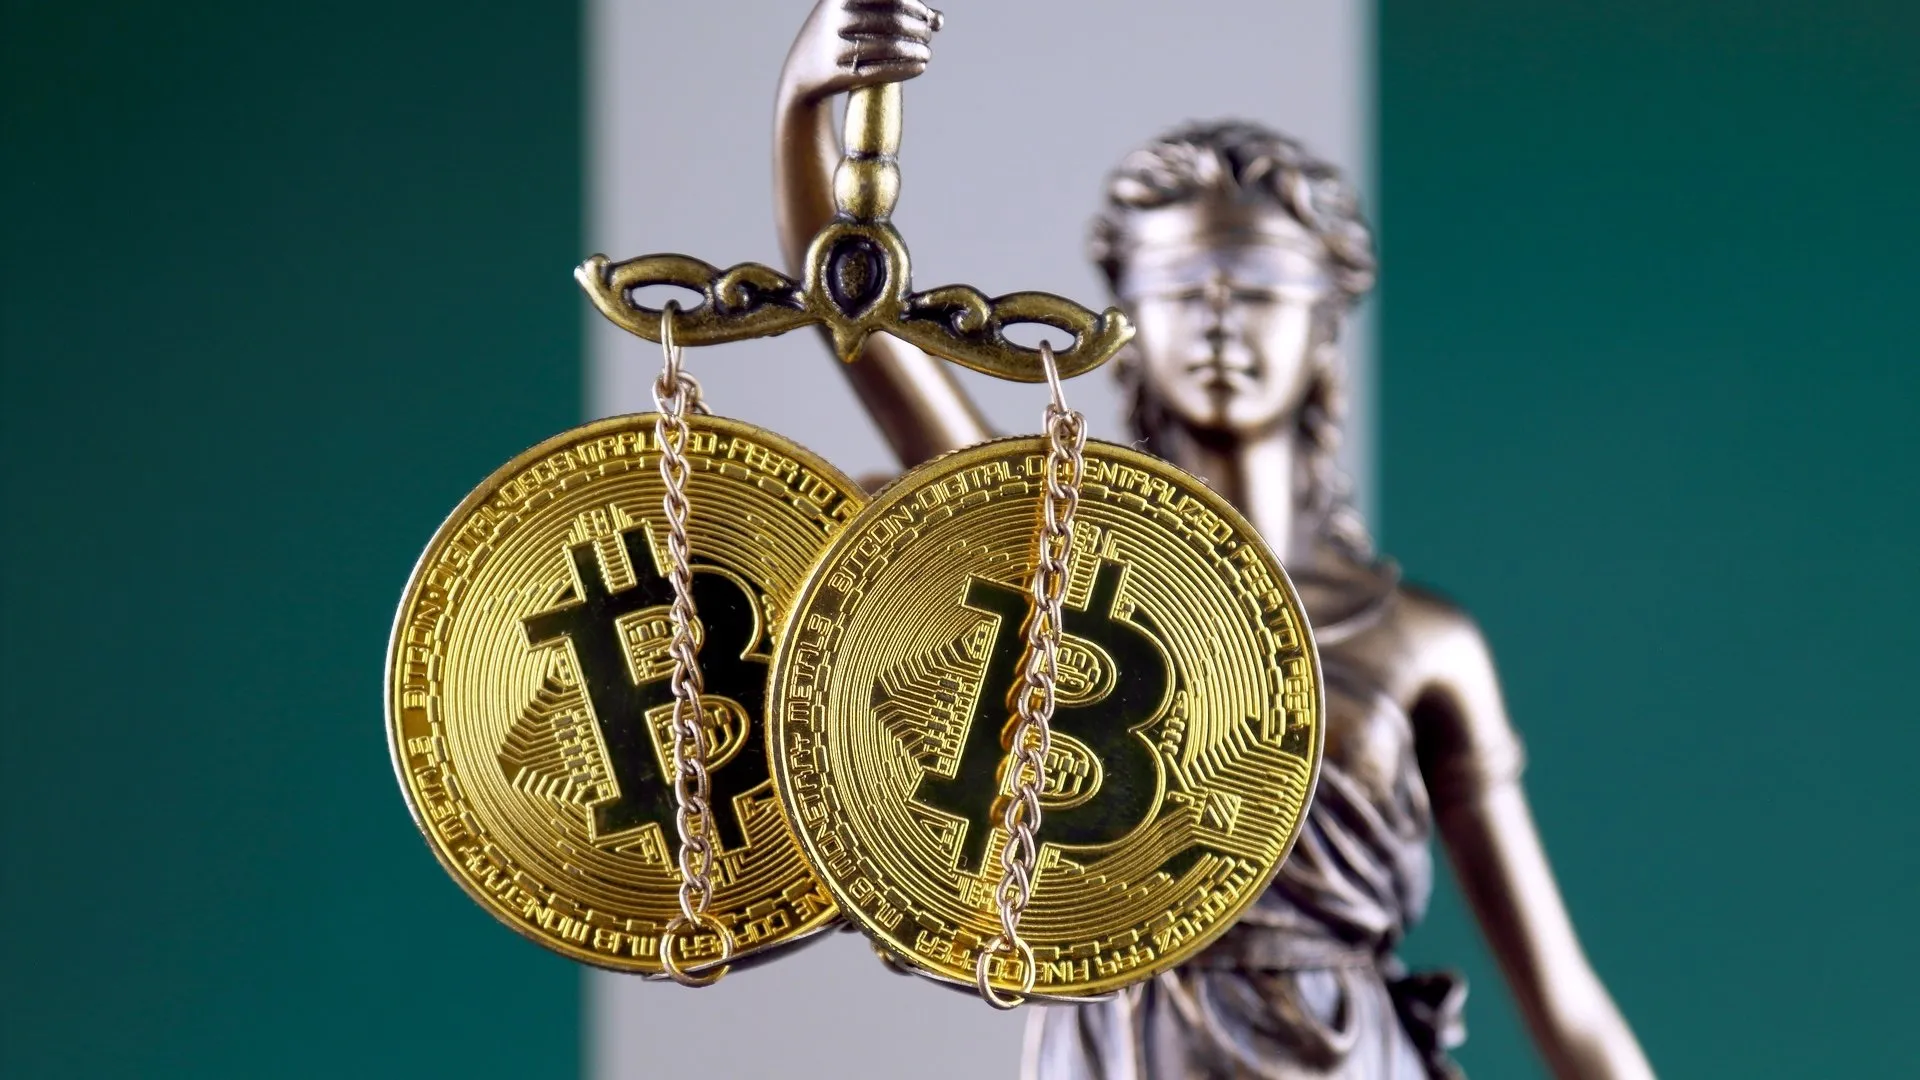 Nigeria regula las criptomonedas tras auge de la adopción de Bitcoin. Imagen: Shutterstock